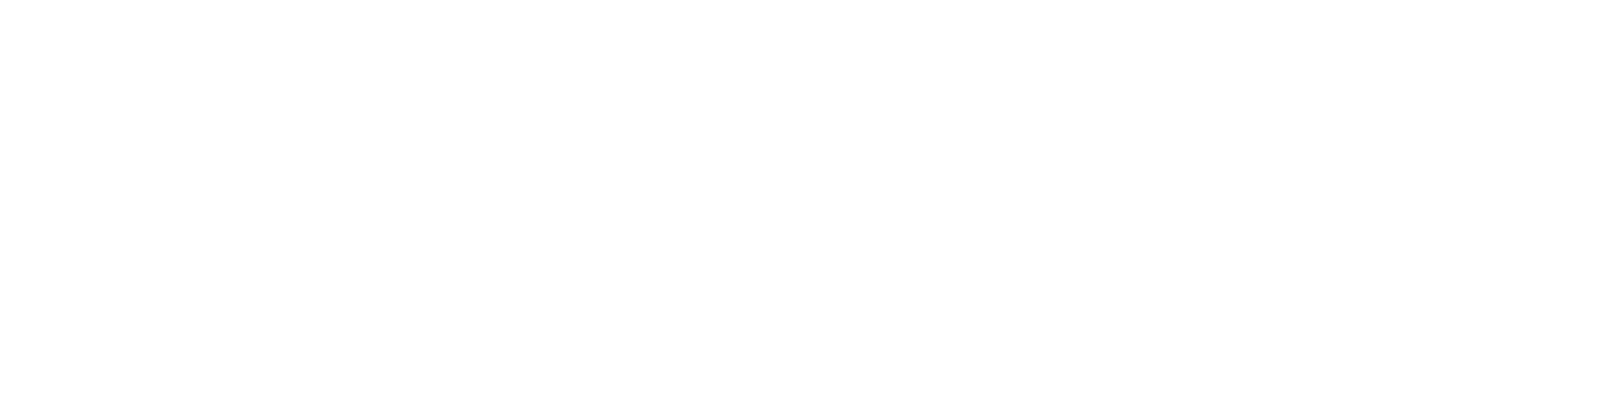 Lanecki – Autodetailing